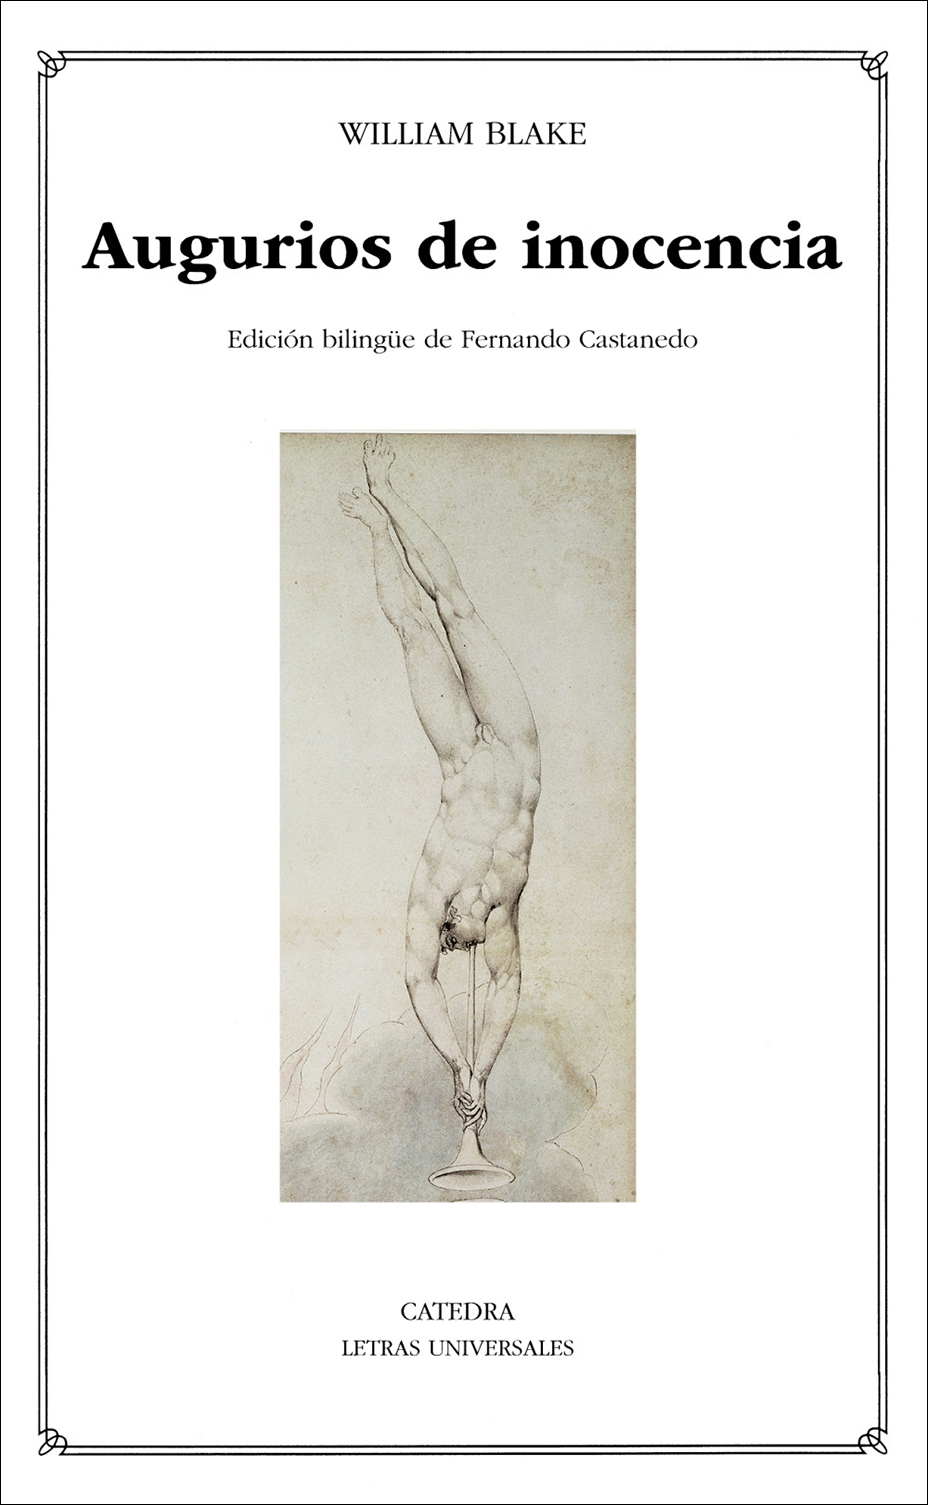 Cover of Castanedo, Augurios de inocencia